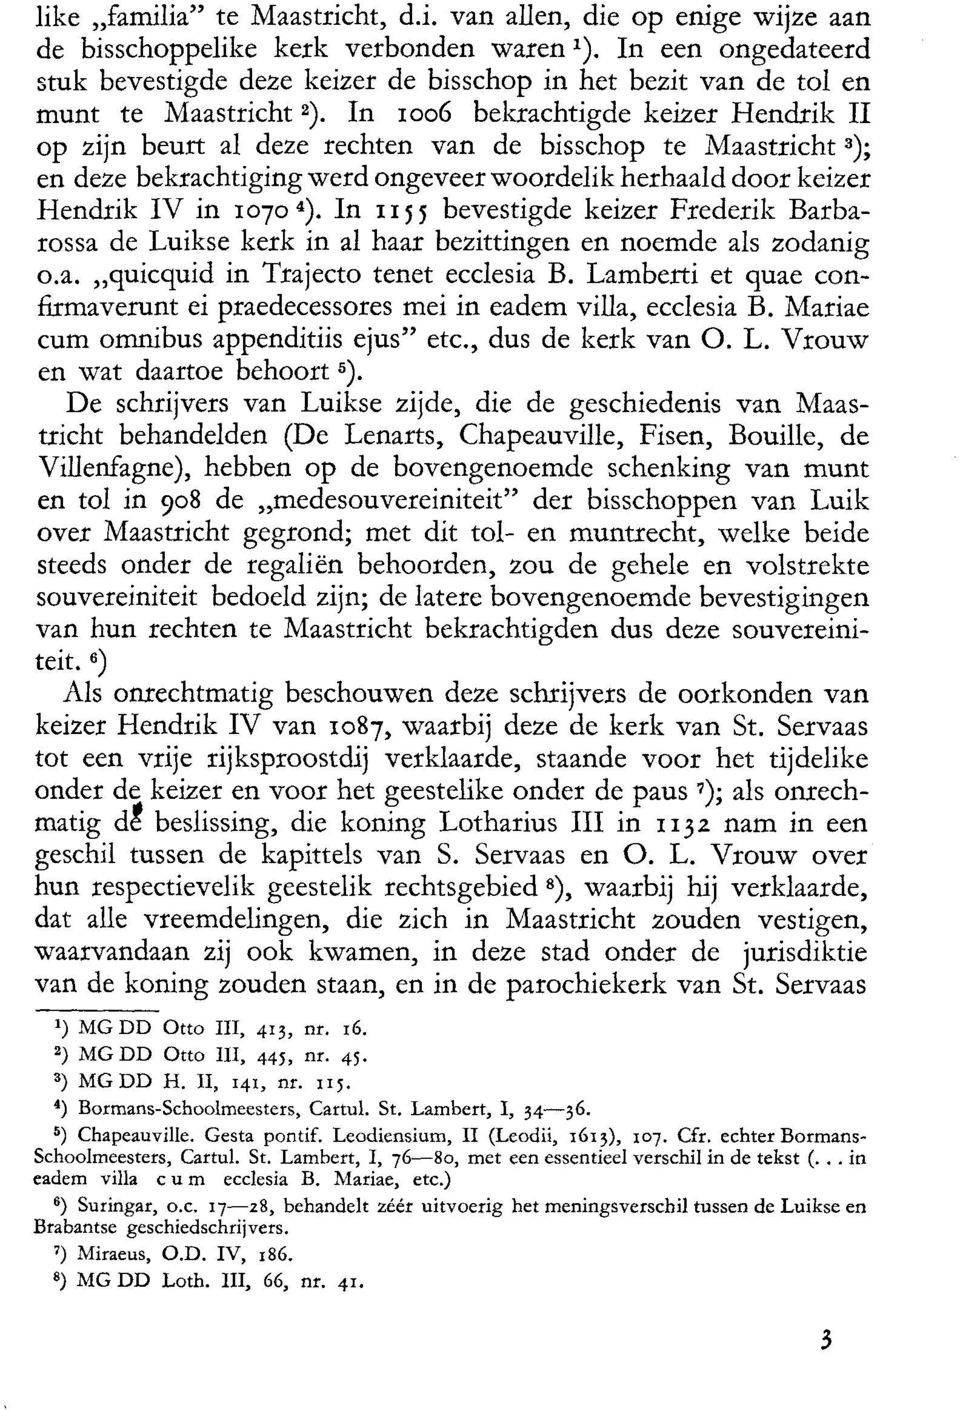 In roo6 bekrachtigde keizer Hendrik II op zljn beurt al deze rechten van de bisschop te Maastricht'); en deze bekrachtiging werd ongeveer v/oordelik herhaald door keizer Hendrik IV in rotoa).